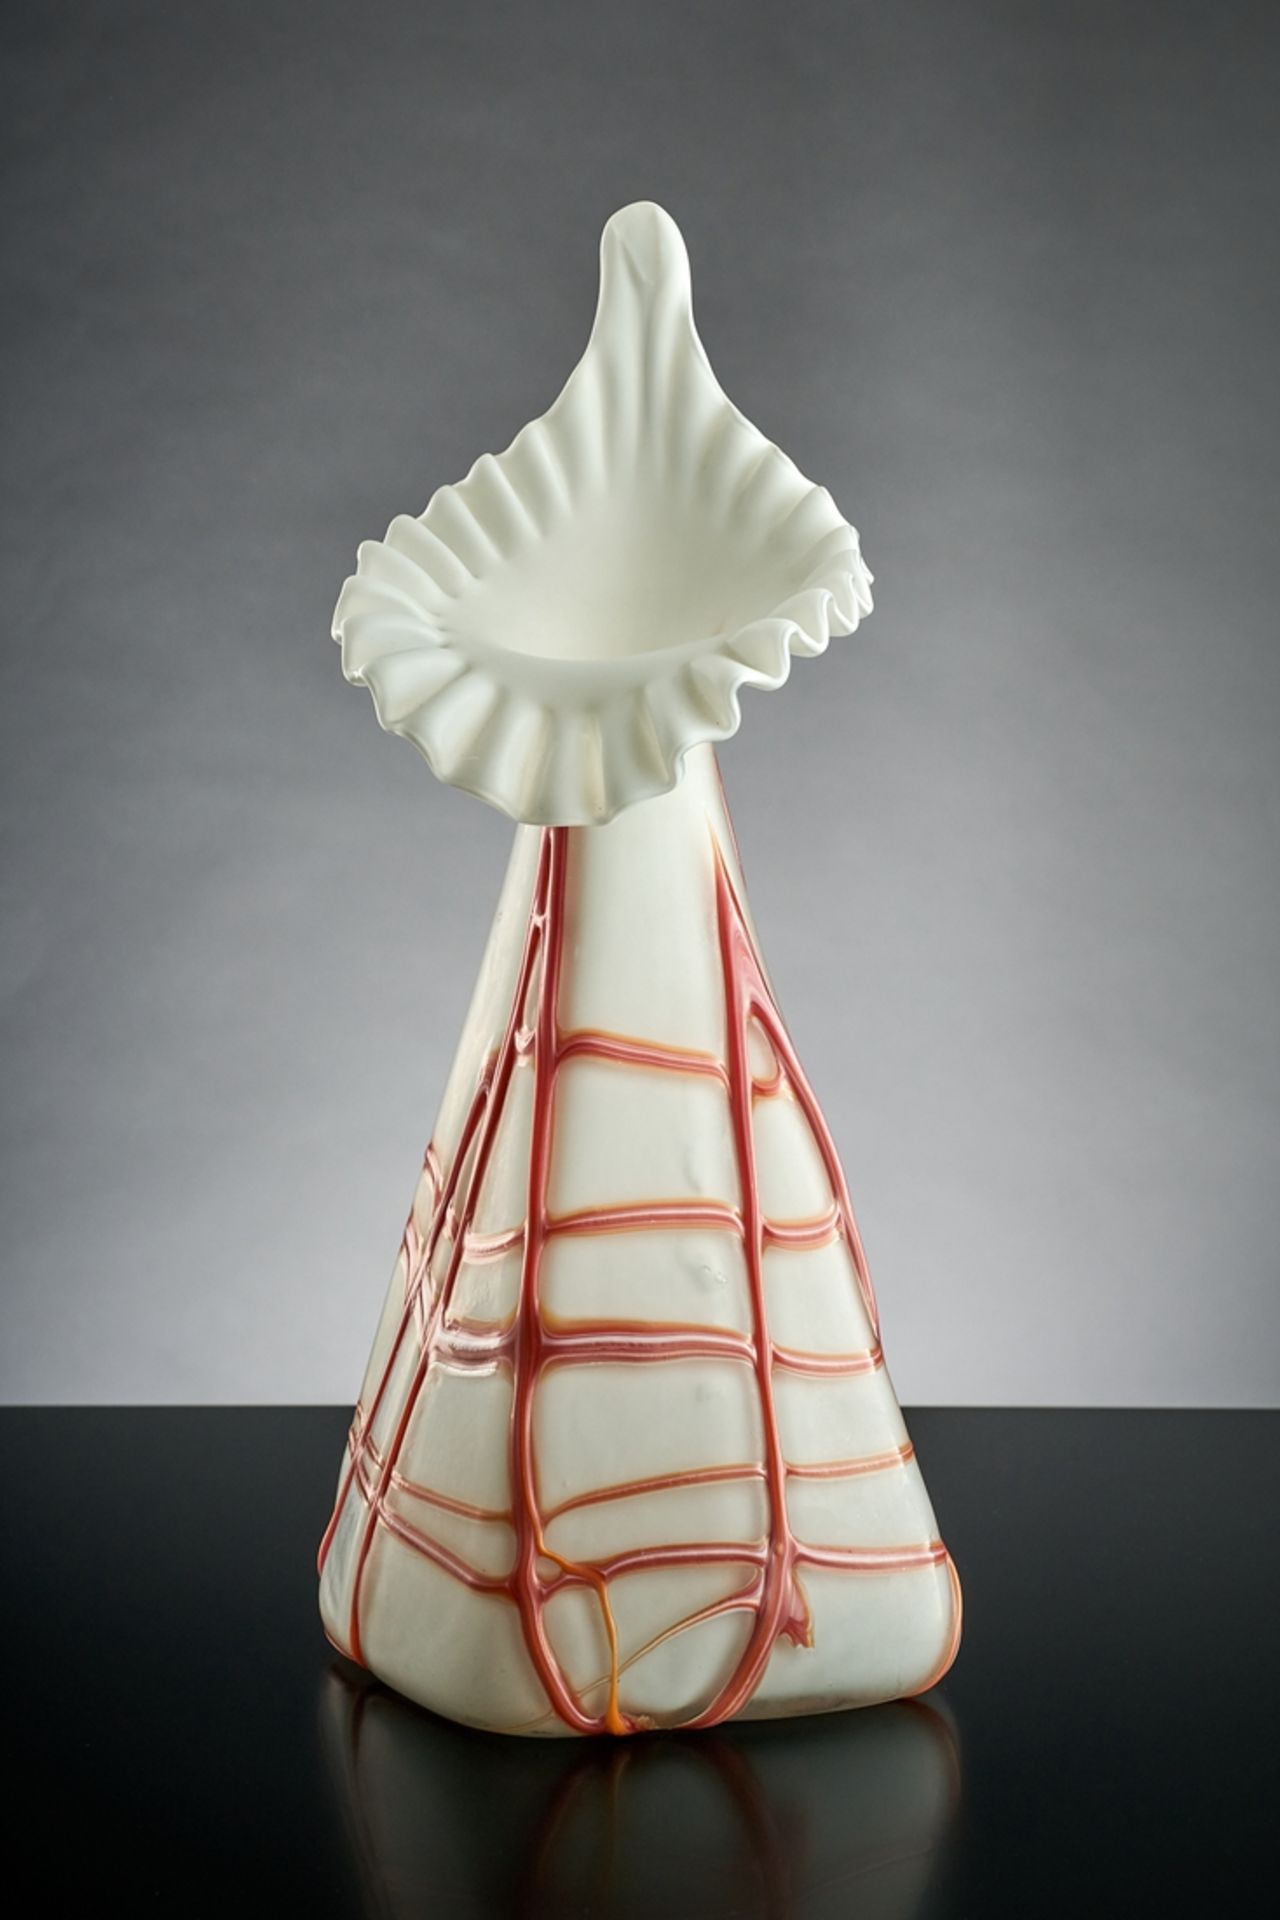 Vase in Form eines Rosensprenggefäßes. Viereckiger konischer Korpus. Beinglas mit korallroten Fade